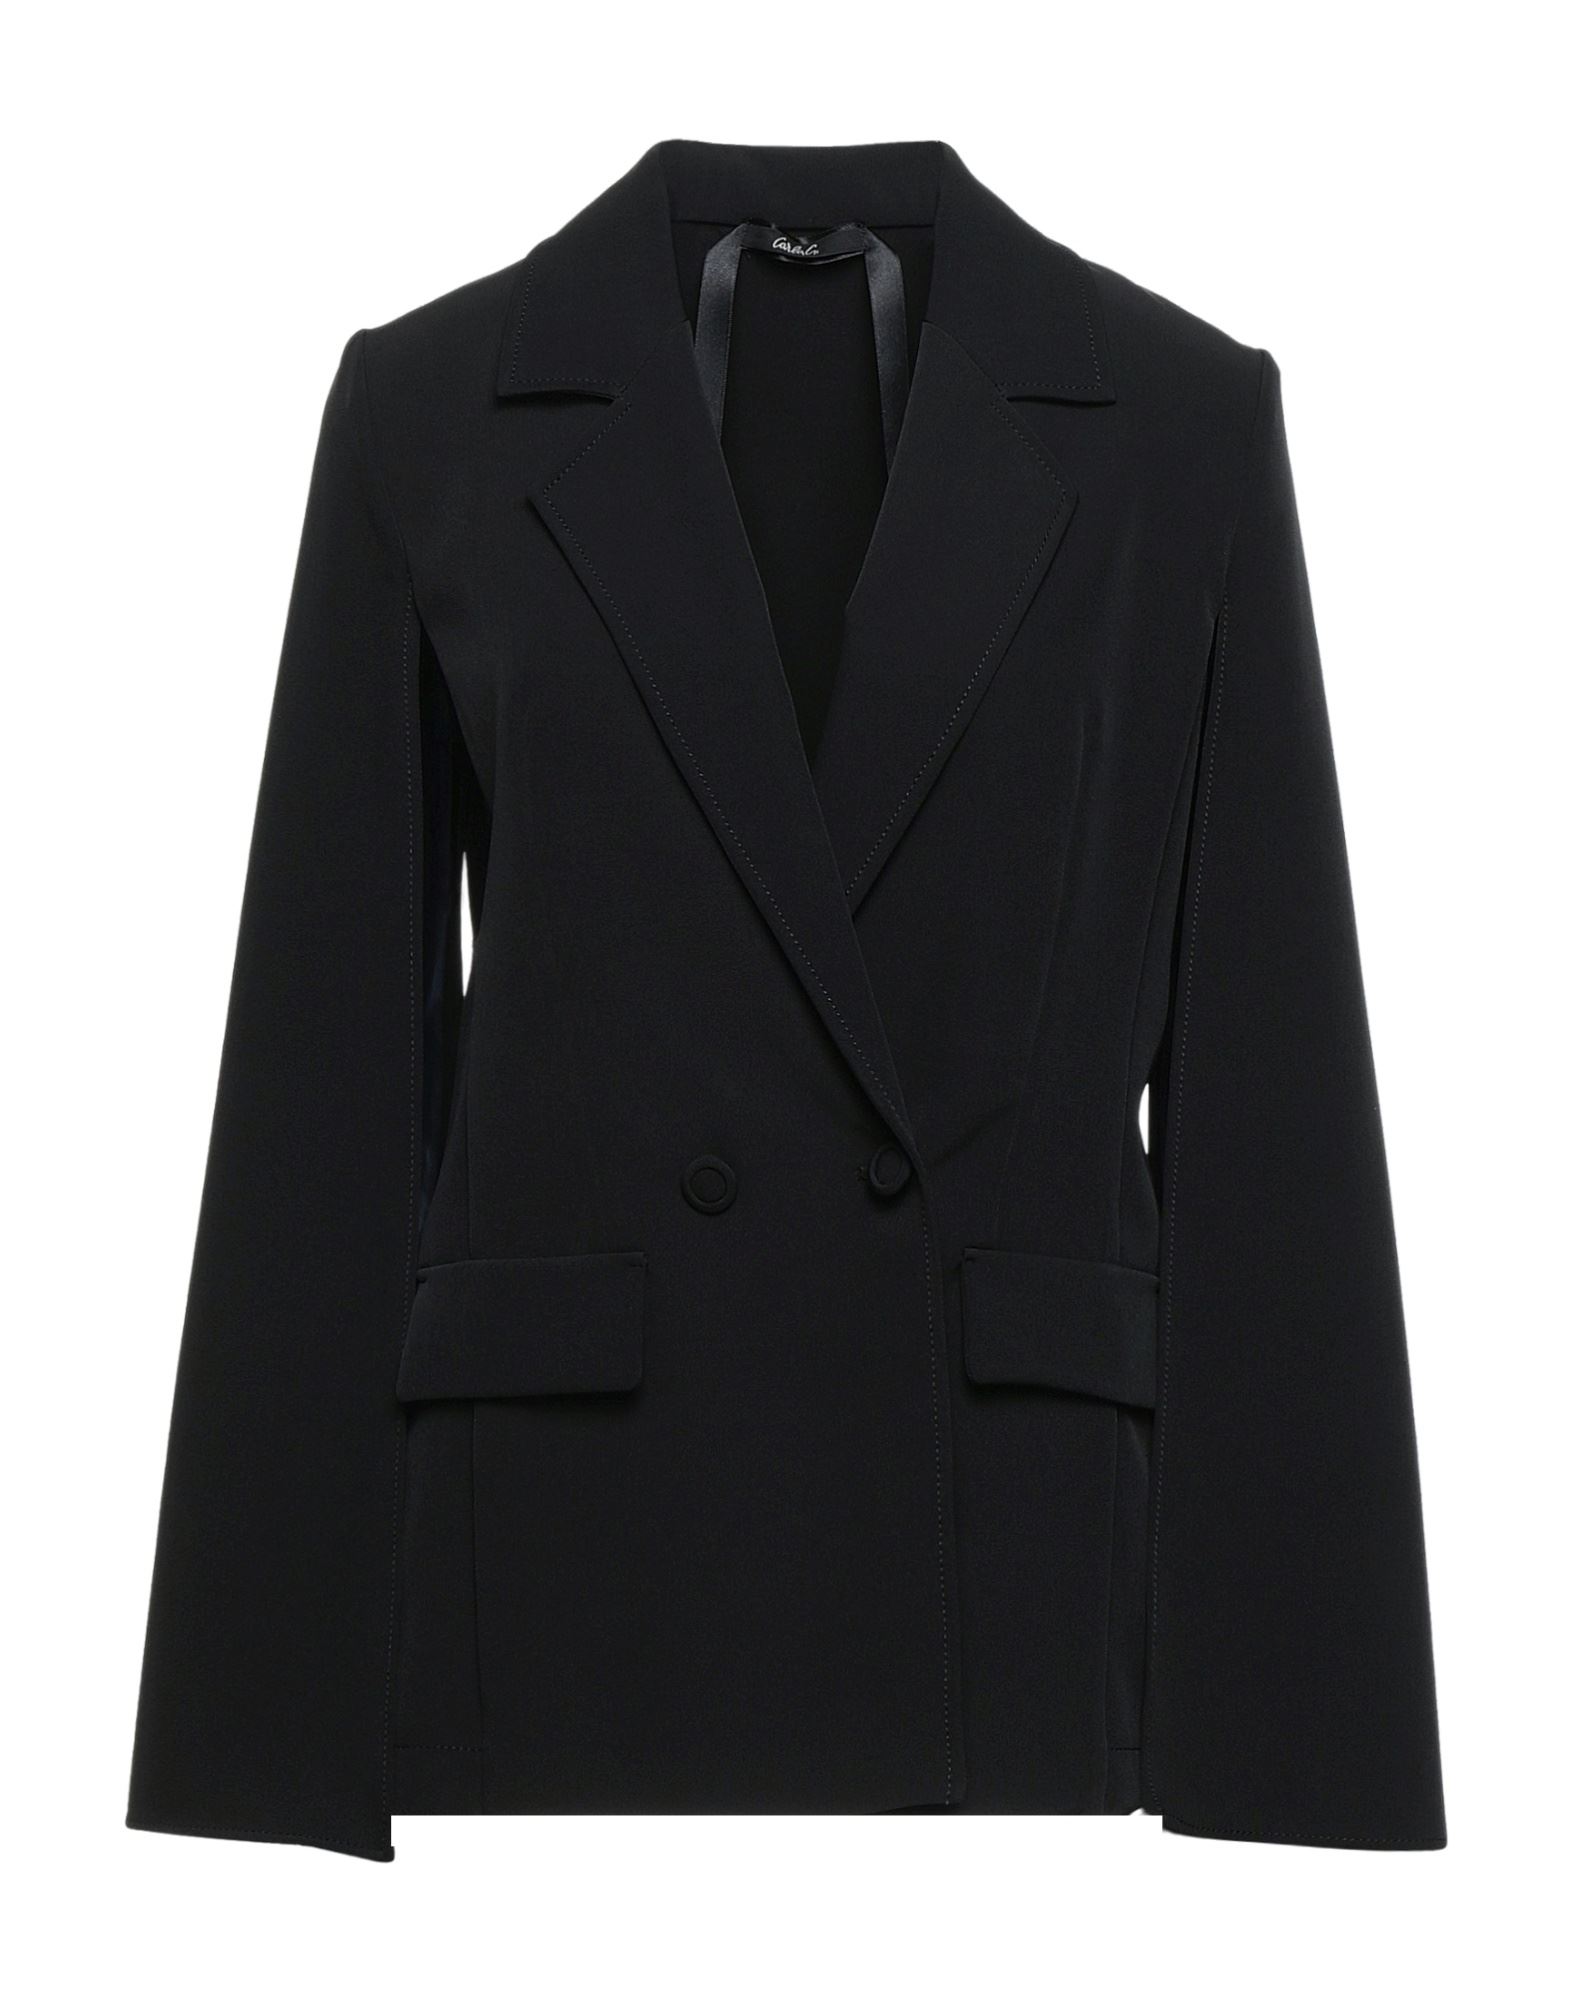 Carla G. Suit Jackets In Black